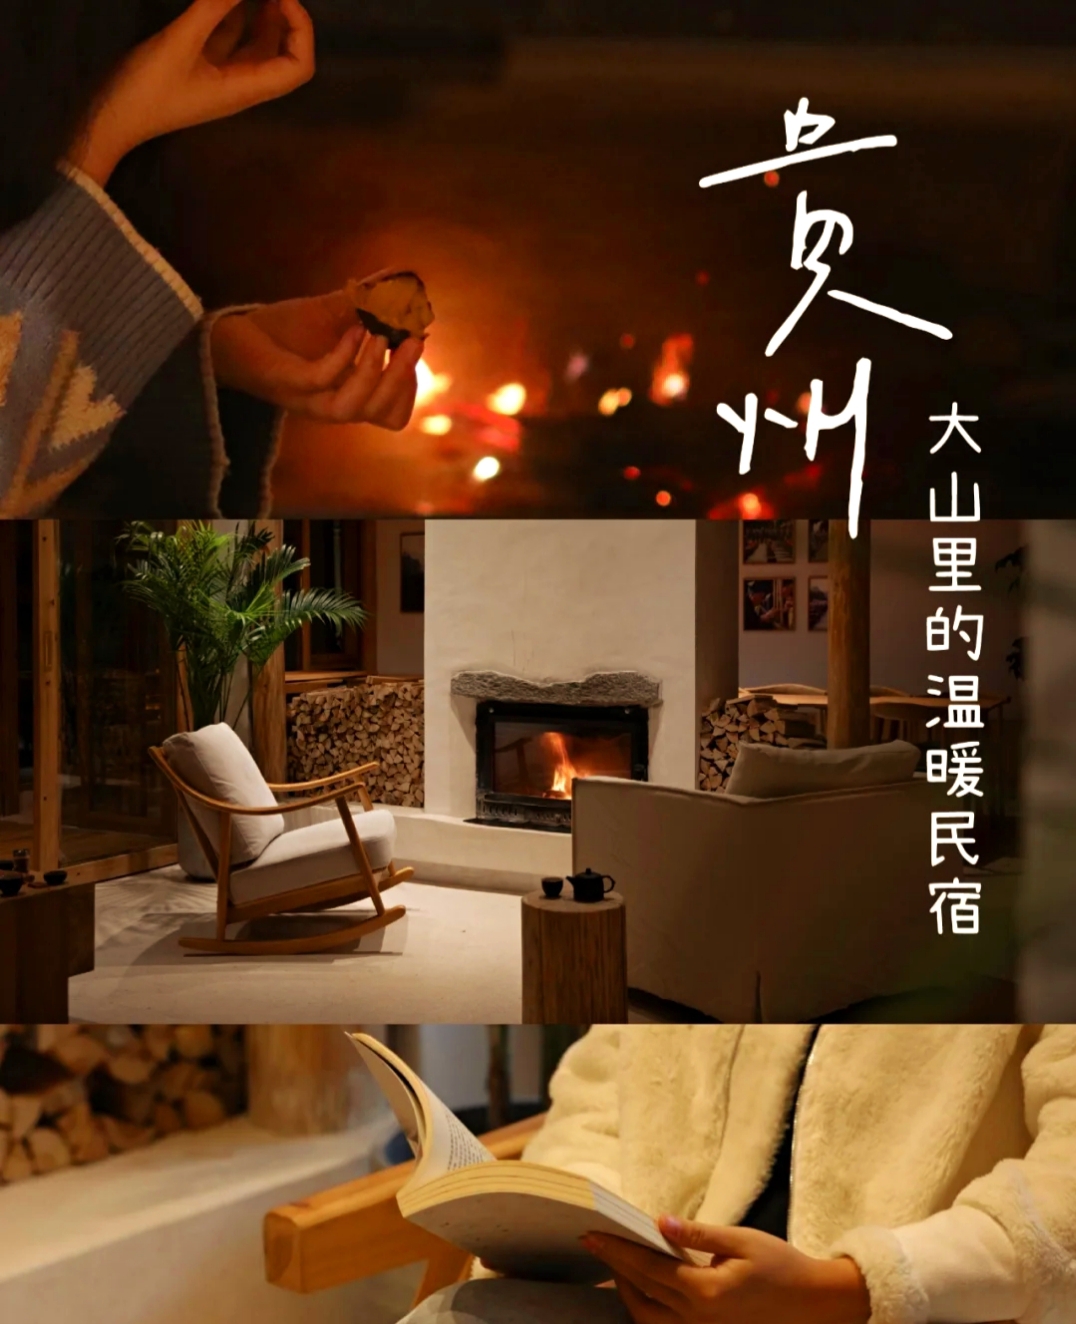 肇兴侗寨古歌秘境民宿壁炉、瑶浴、全屋暖气贵州的冬天不再冷